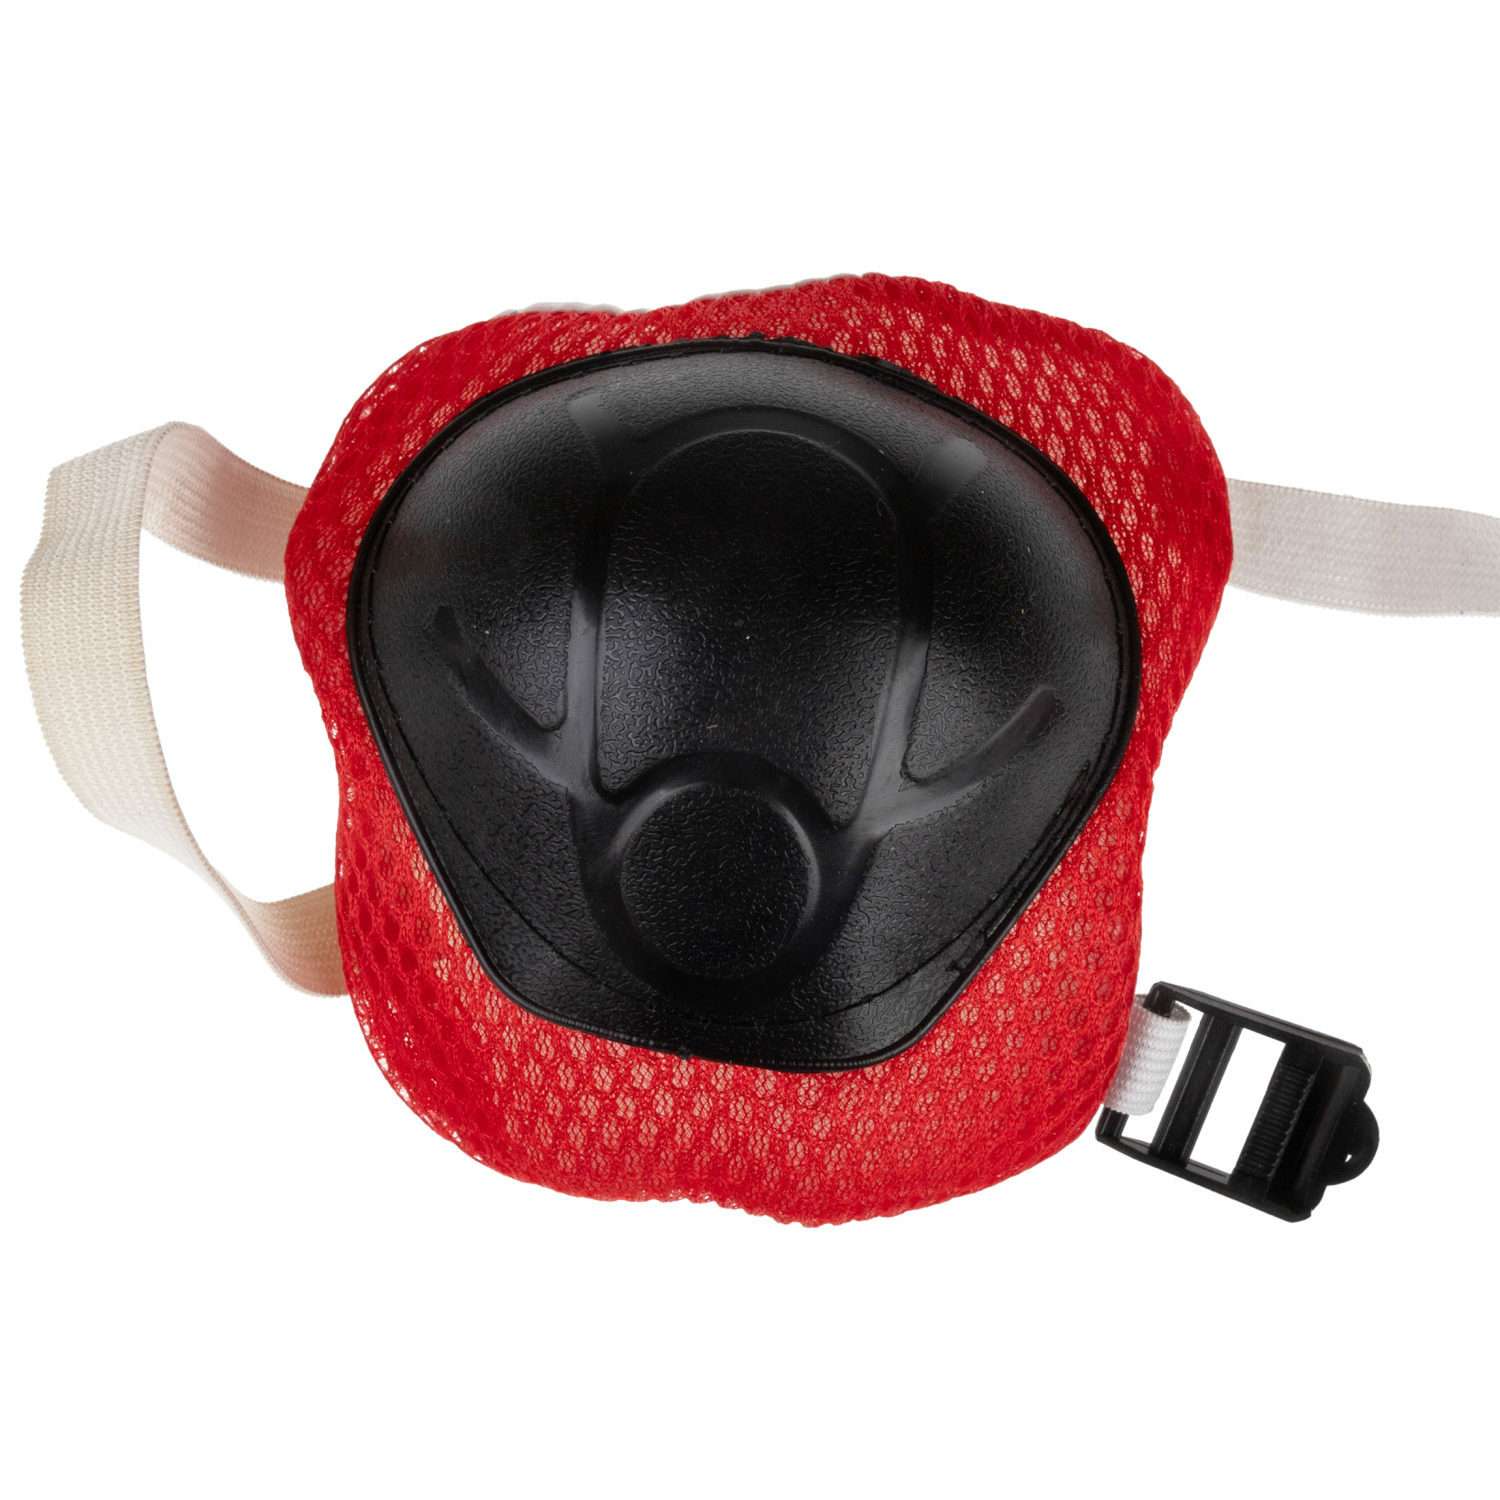 Ролики Navigator детские раздвижные 34 - 37 размер с защитой и шлемом красный - фото 13